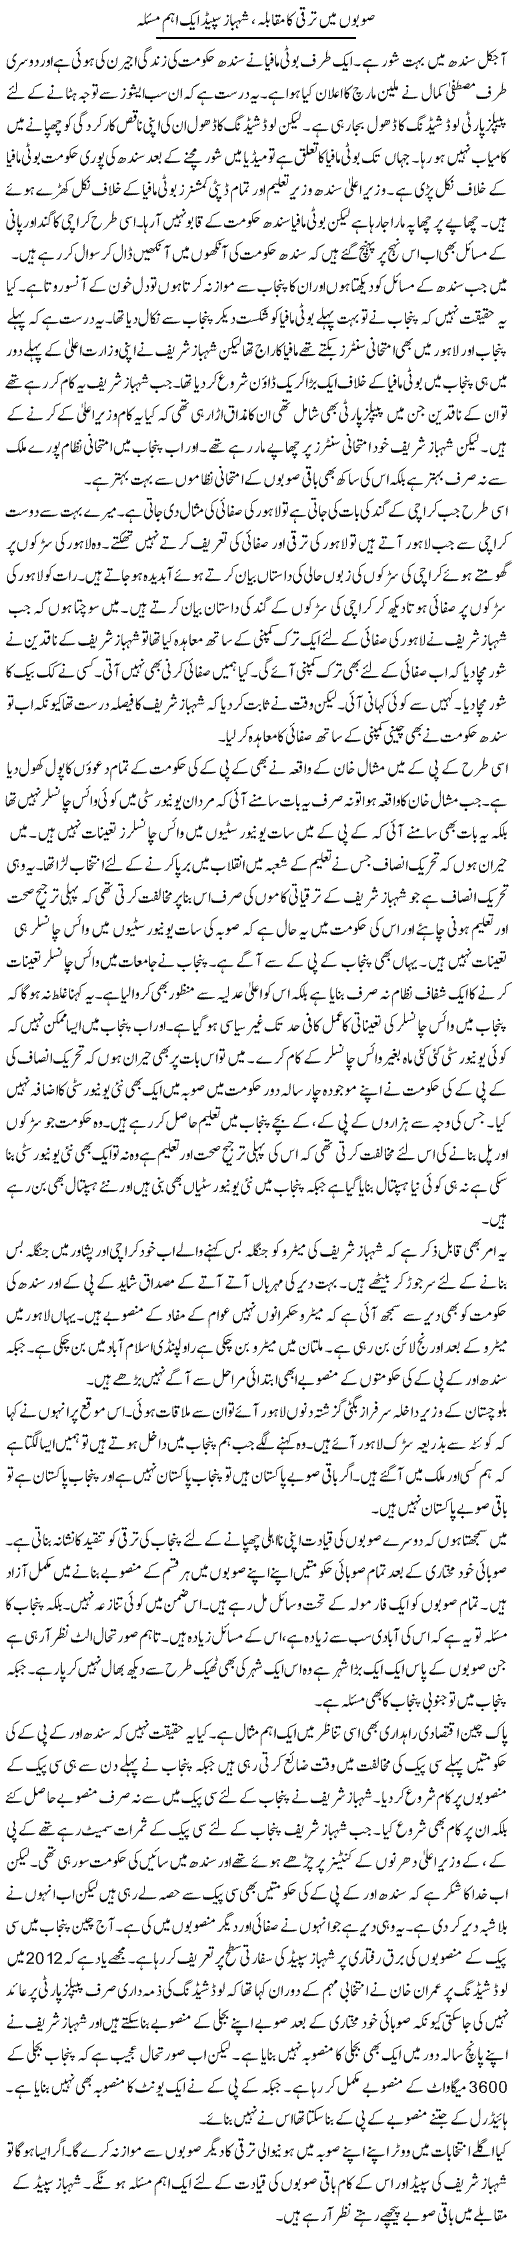 Subon Mein Taraqqi Ka Muqaabla, Shahbaz Speed Aik Ahem Masla | Muzamal Suharwardy | Daily Urdu Columns